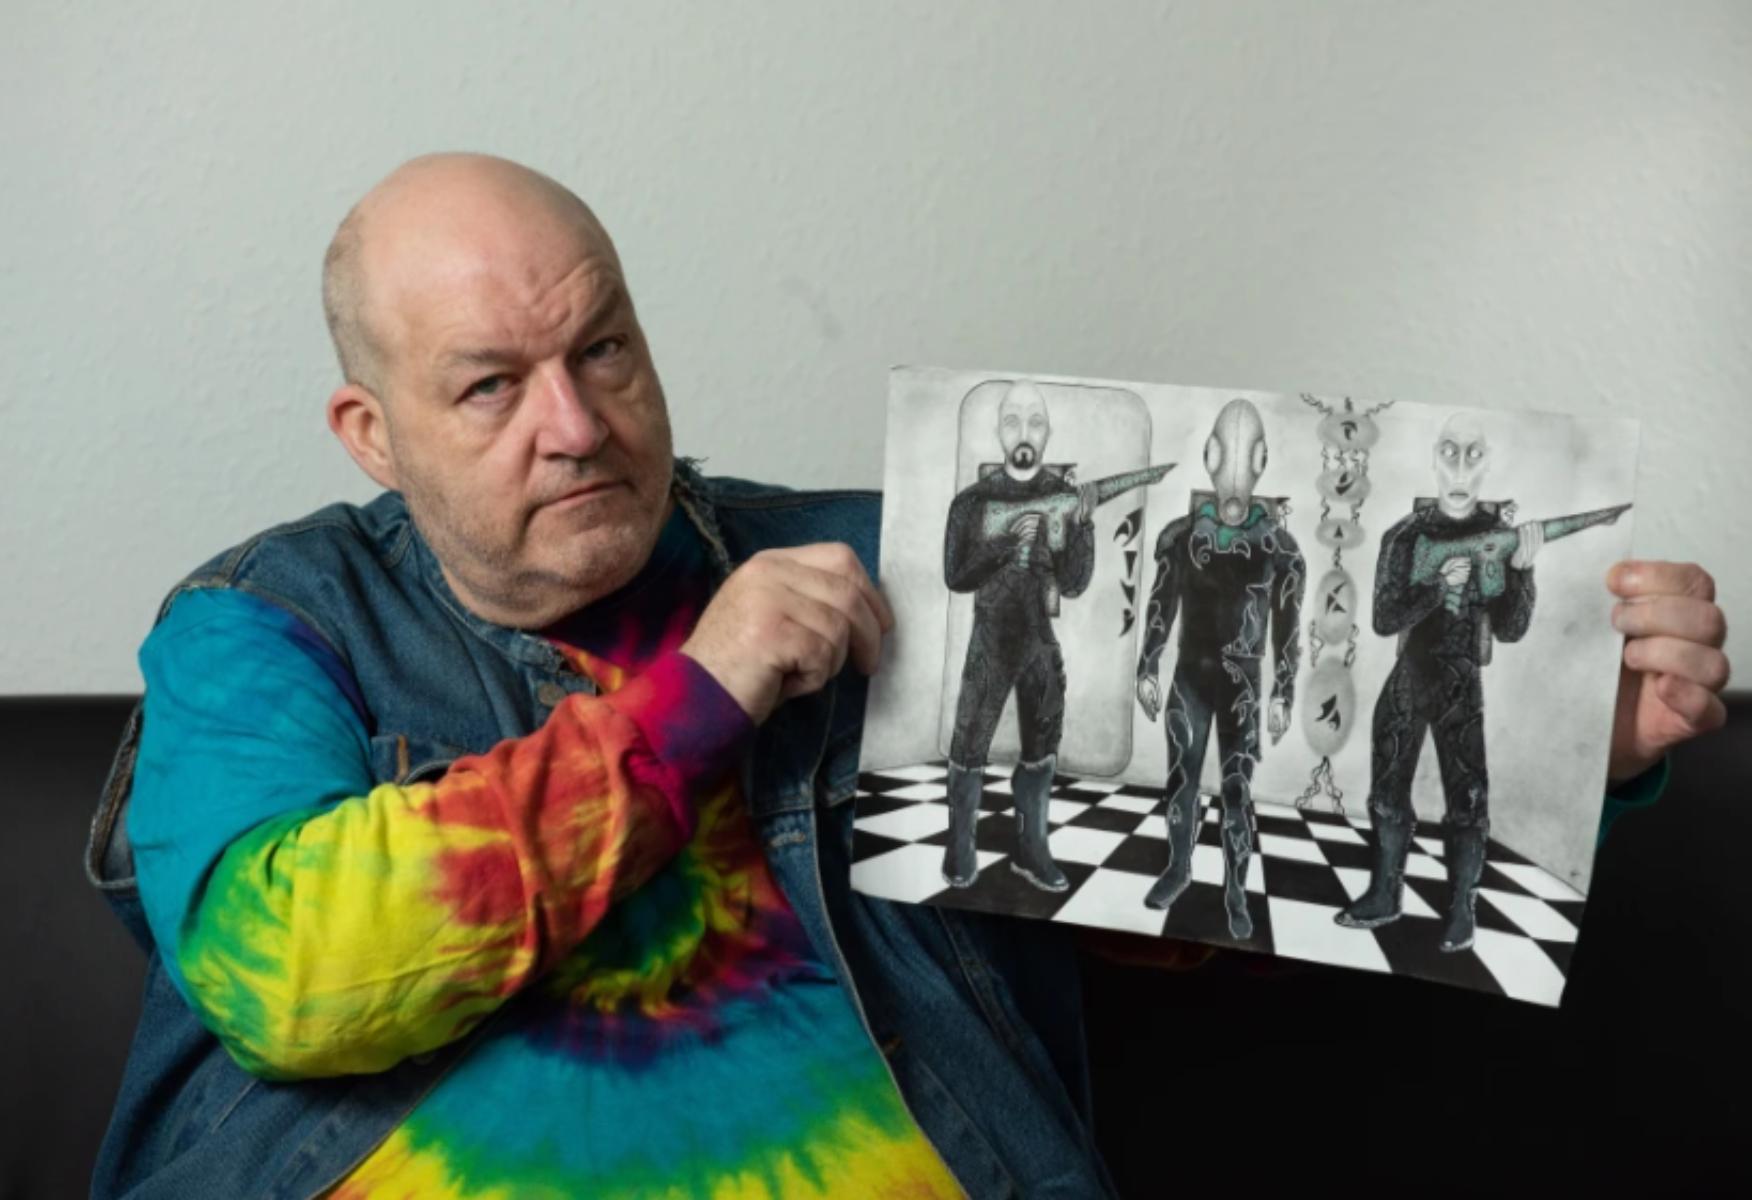 Bărbatul care susține că a fost răpit de extratereștri de 60 de ori, îmbrăcat cu un janorac colorat și arată un desen în creion cu trei entități extraterestre